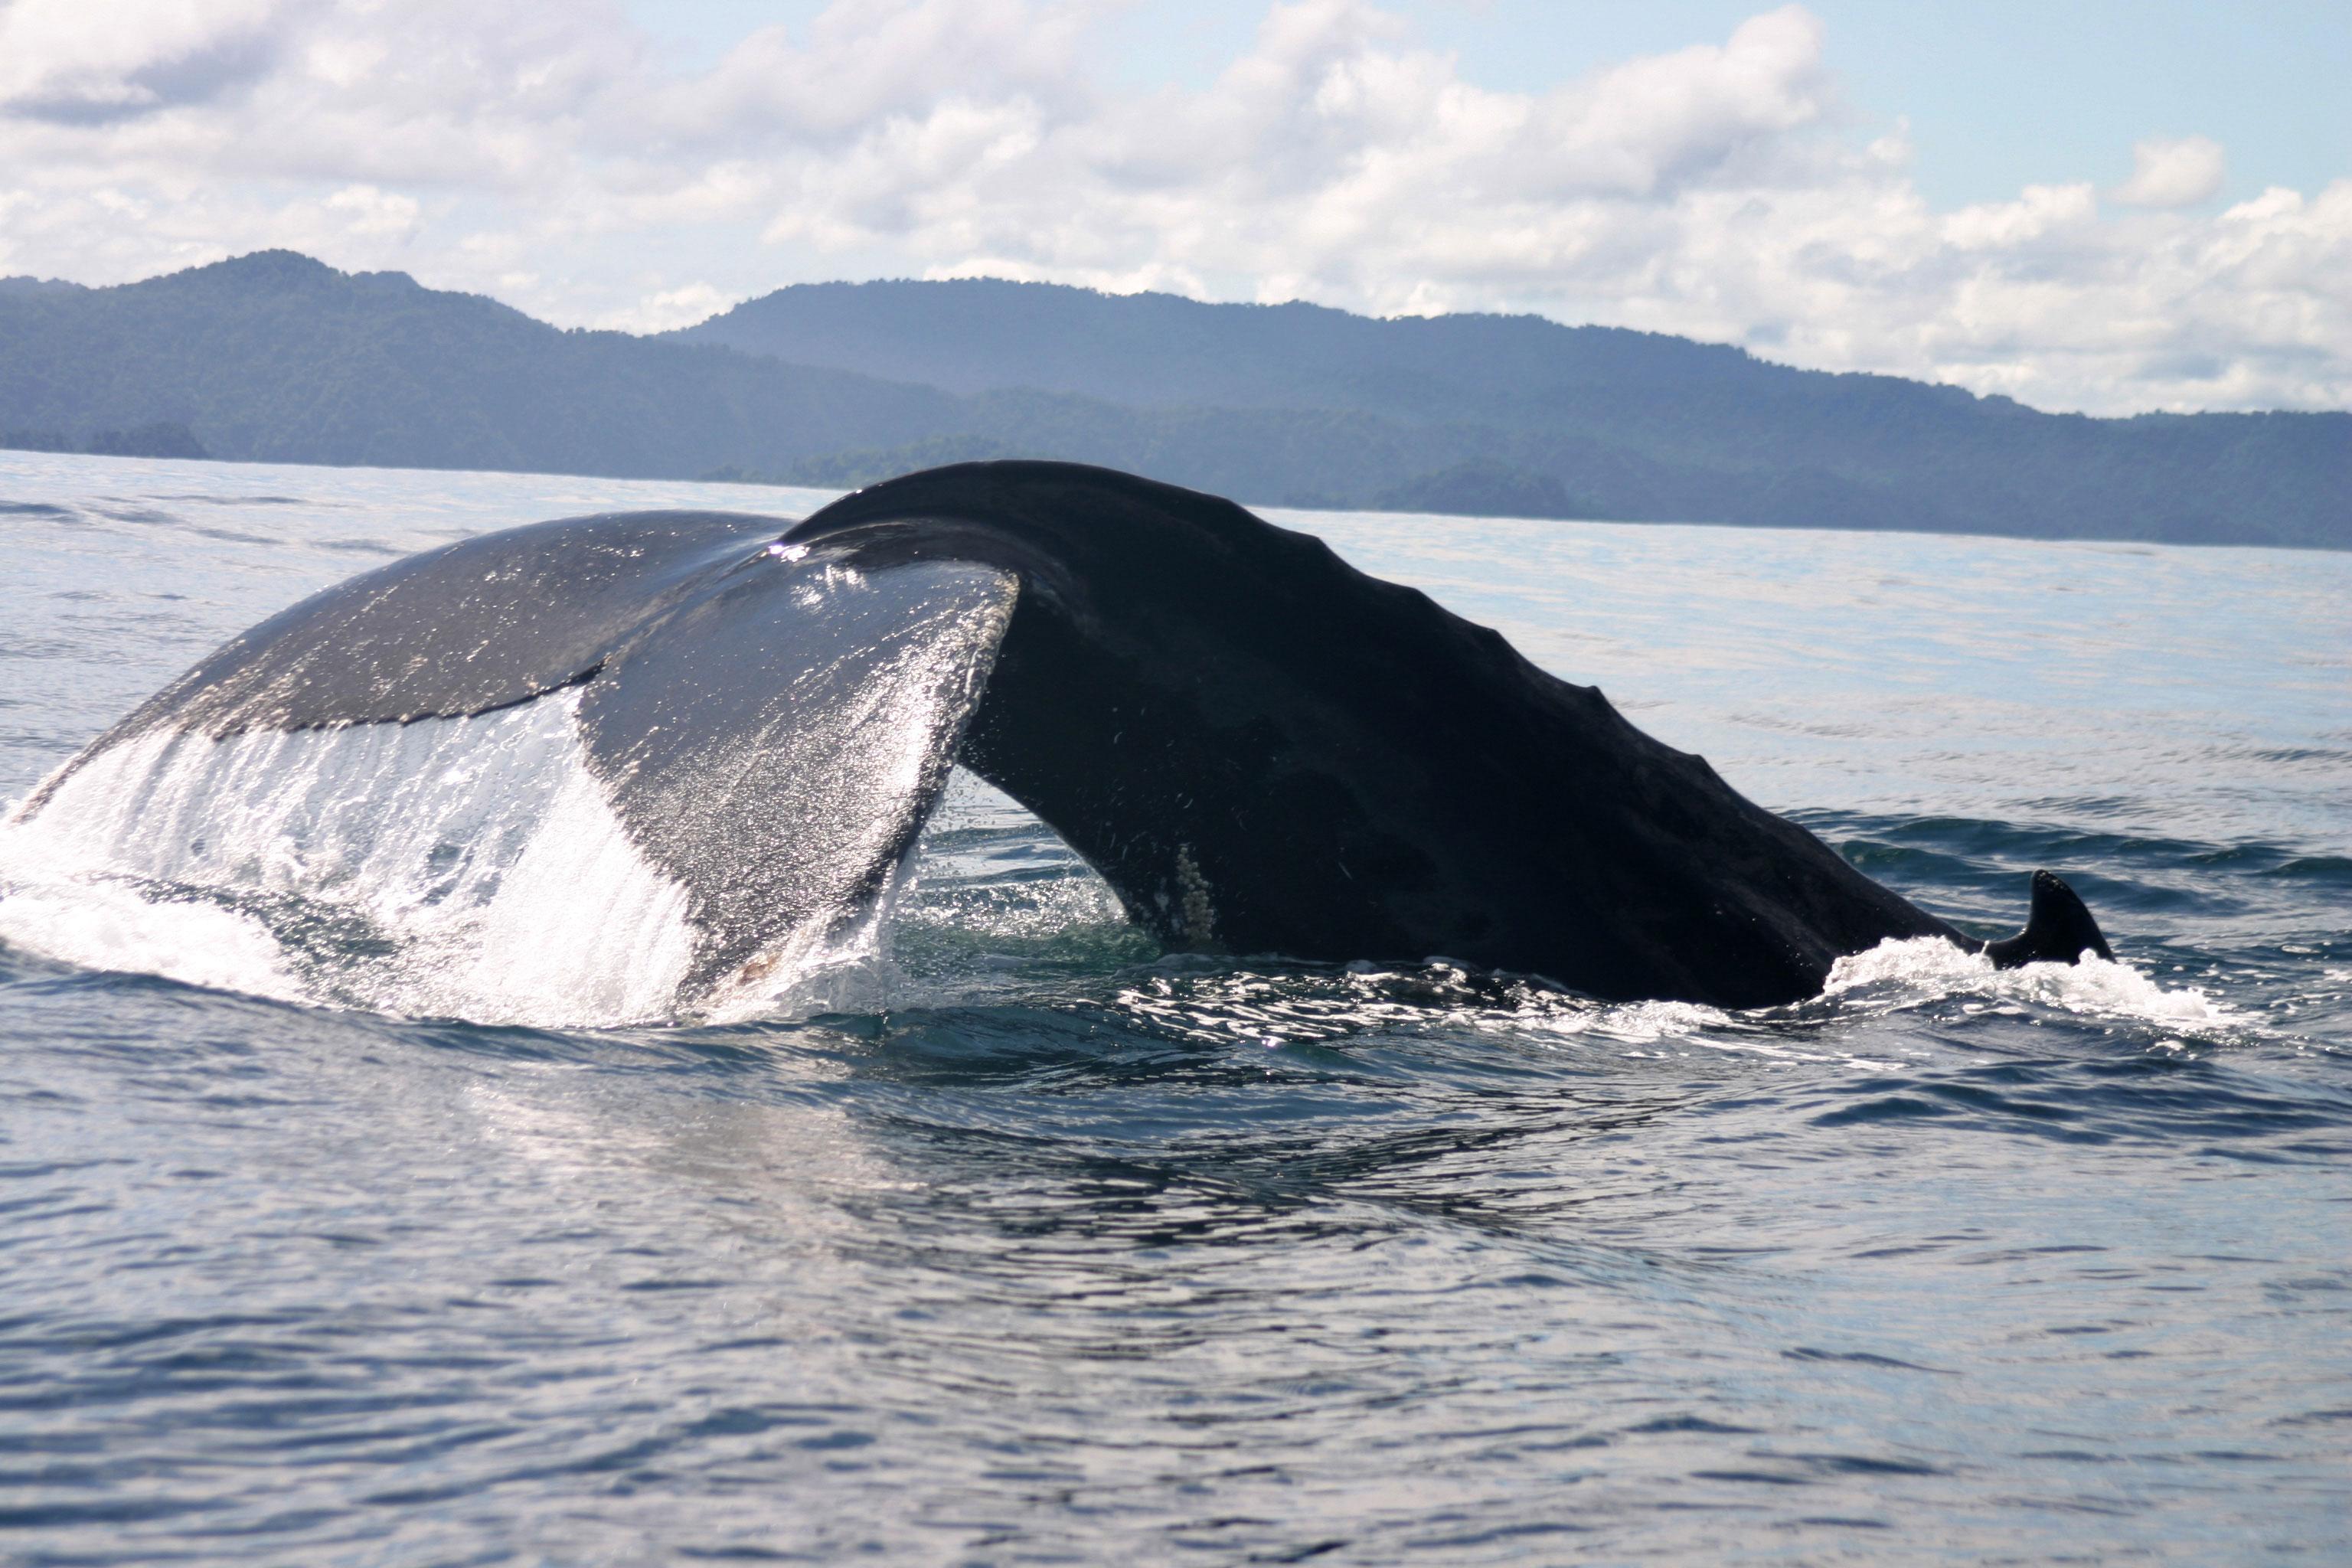 Ecolodge, reserva natural y avistamiento de ballenas en Bahía Solano